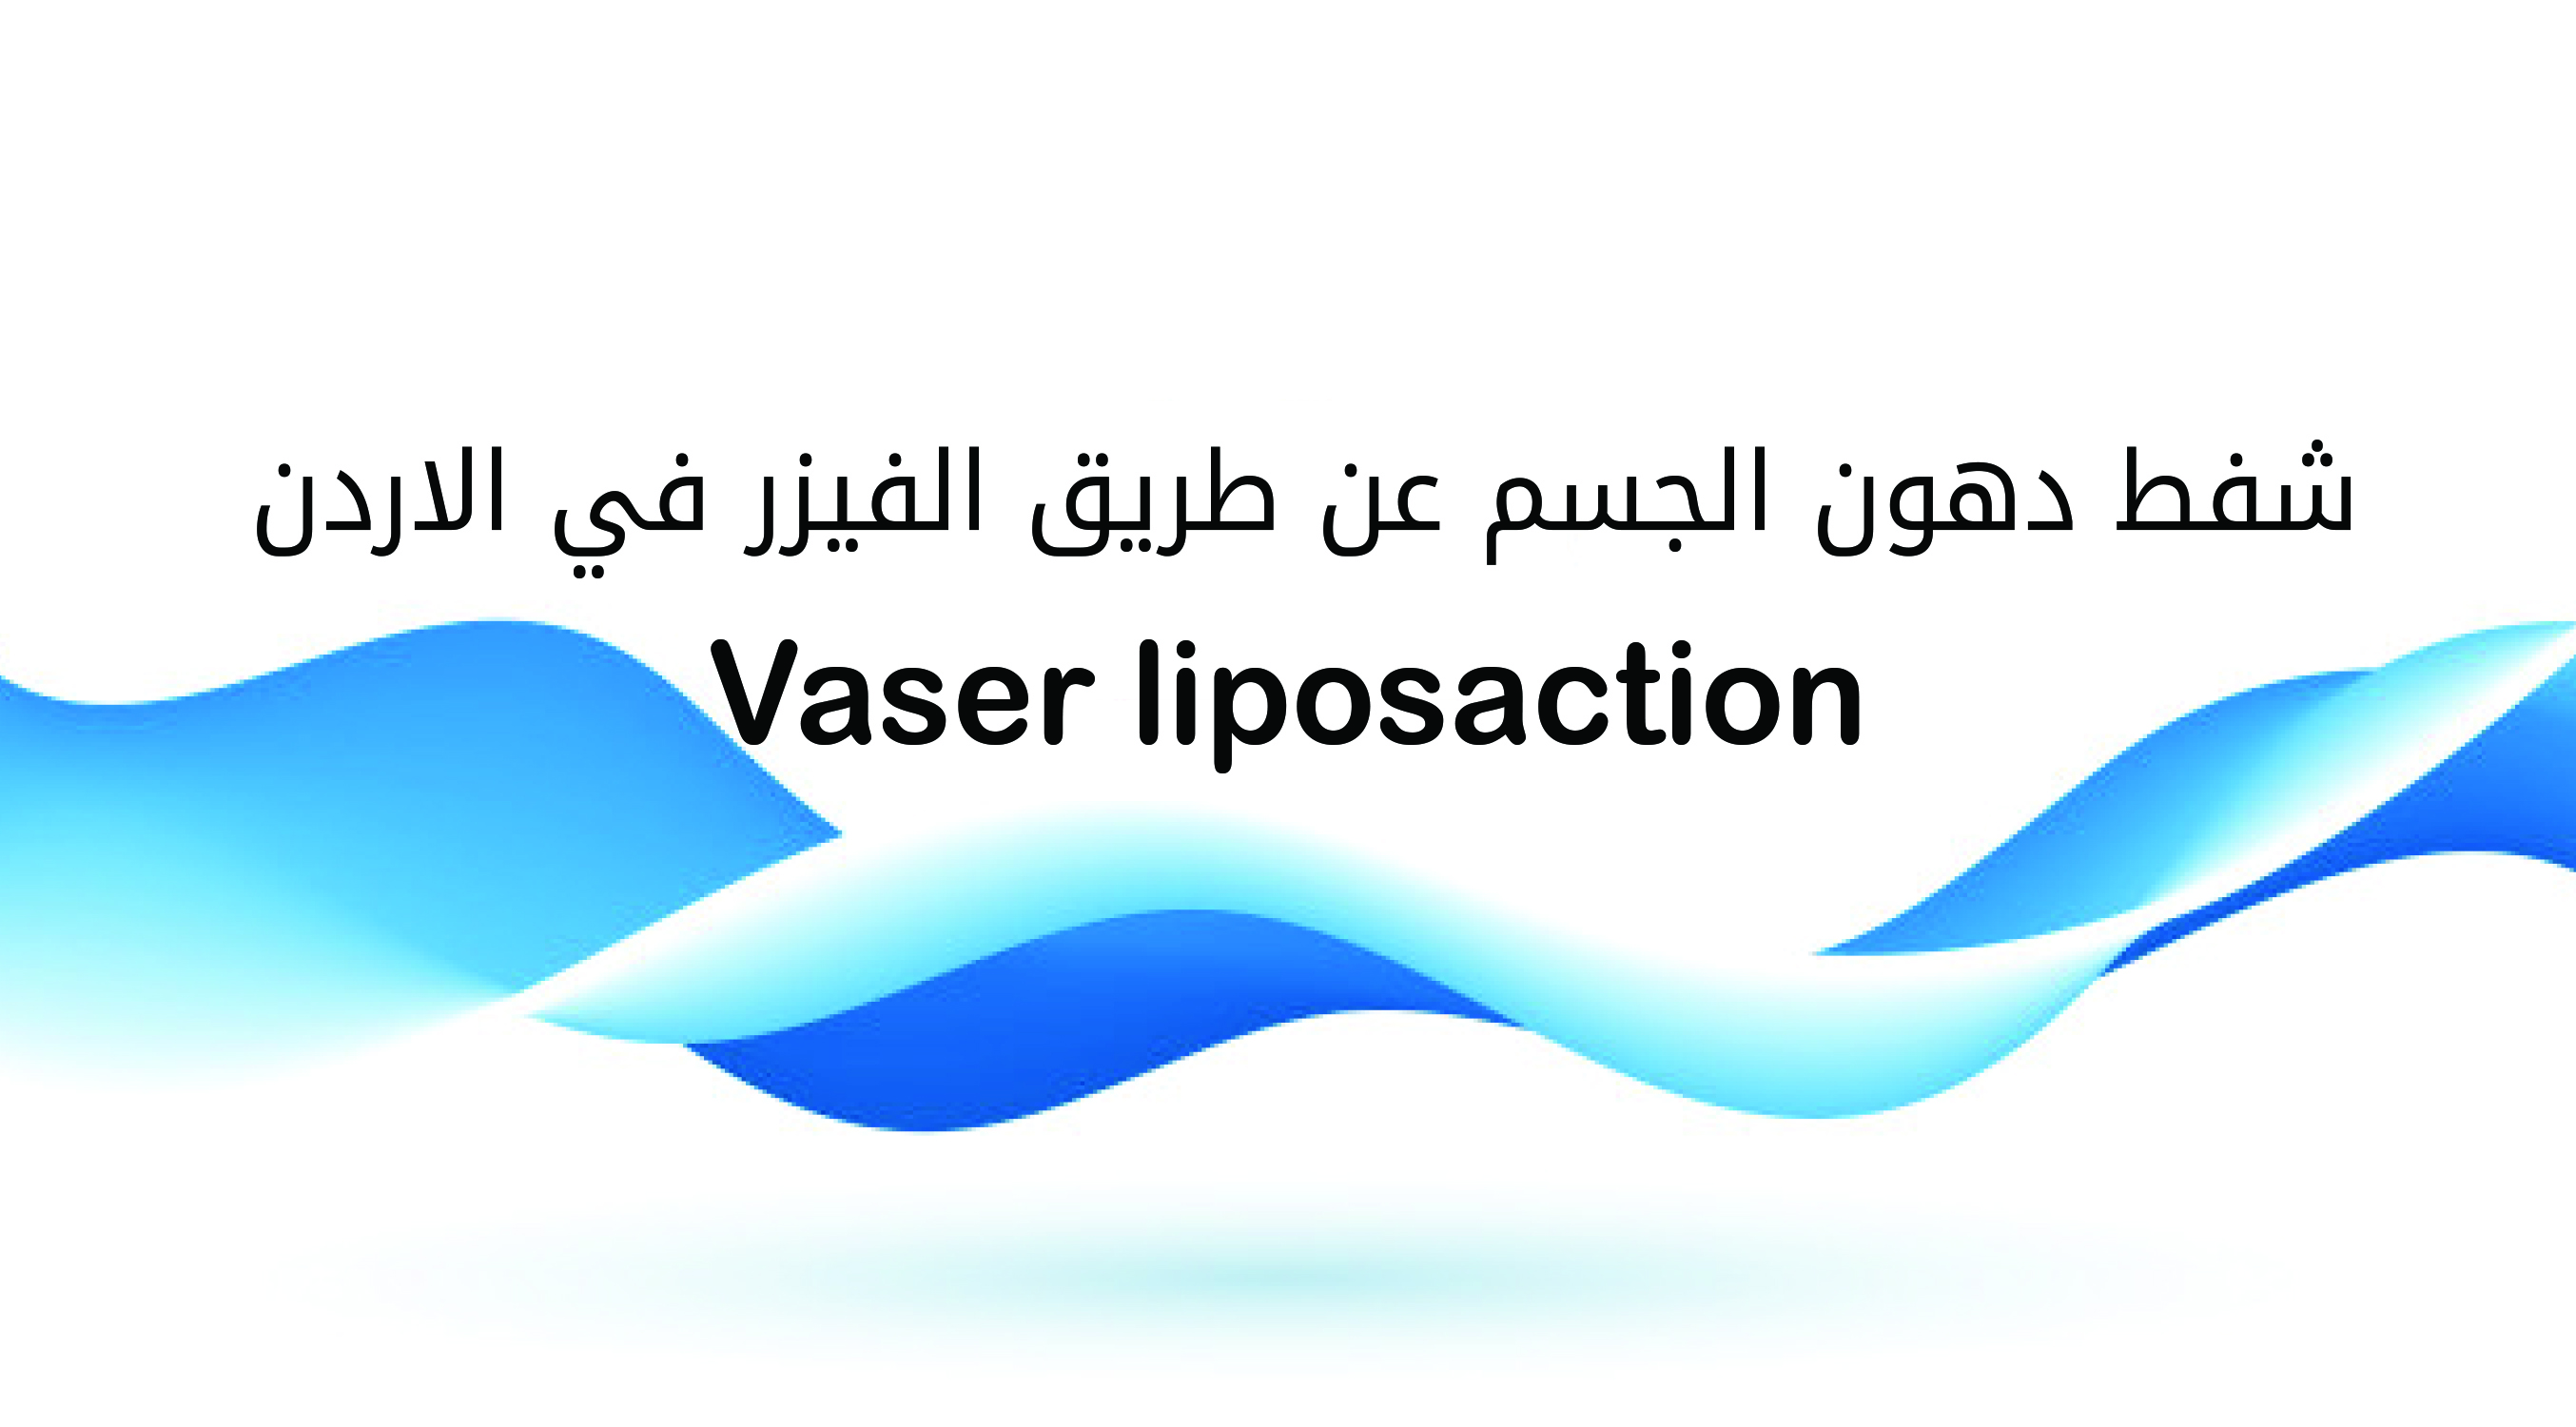 شفط دهون الجسم عن طريق الفيزر في الاردن vaser liposaction 